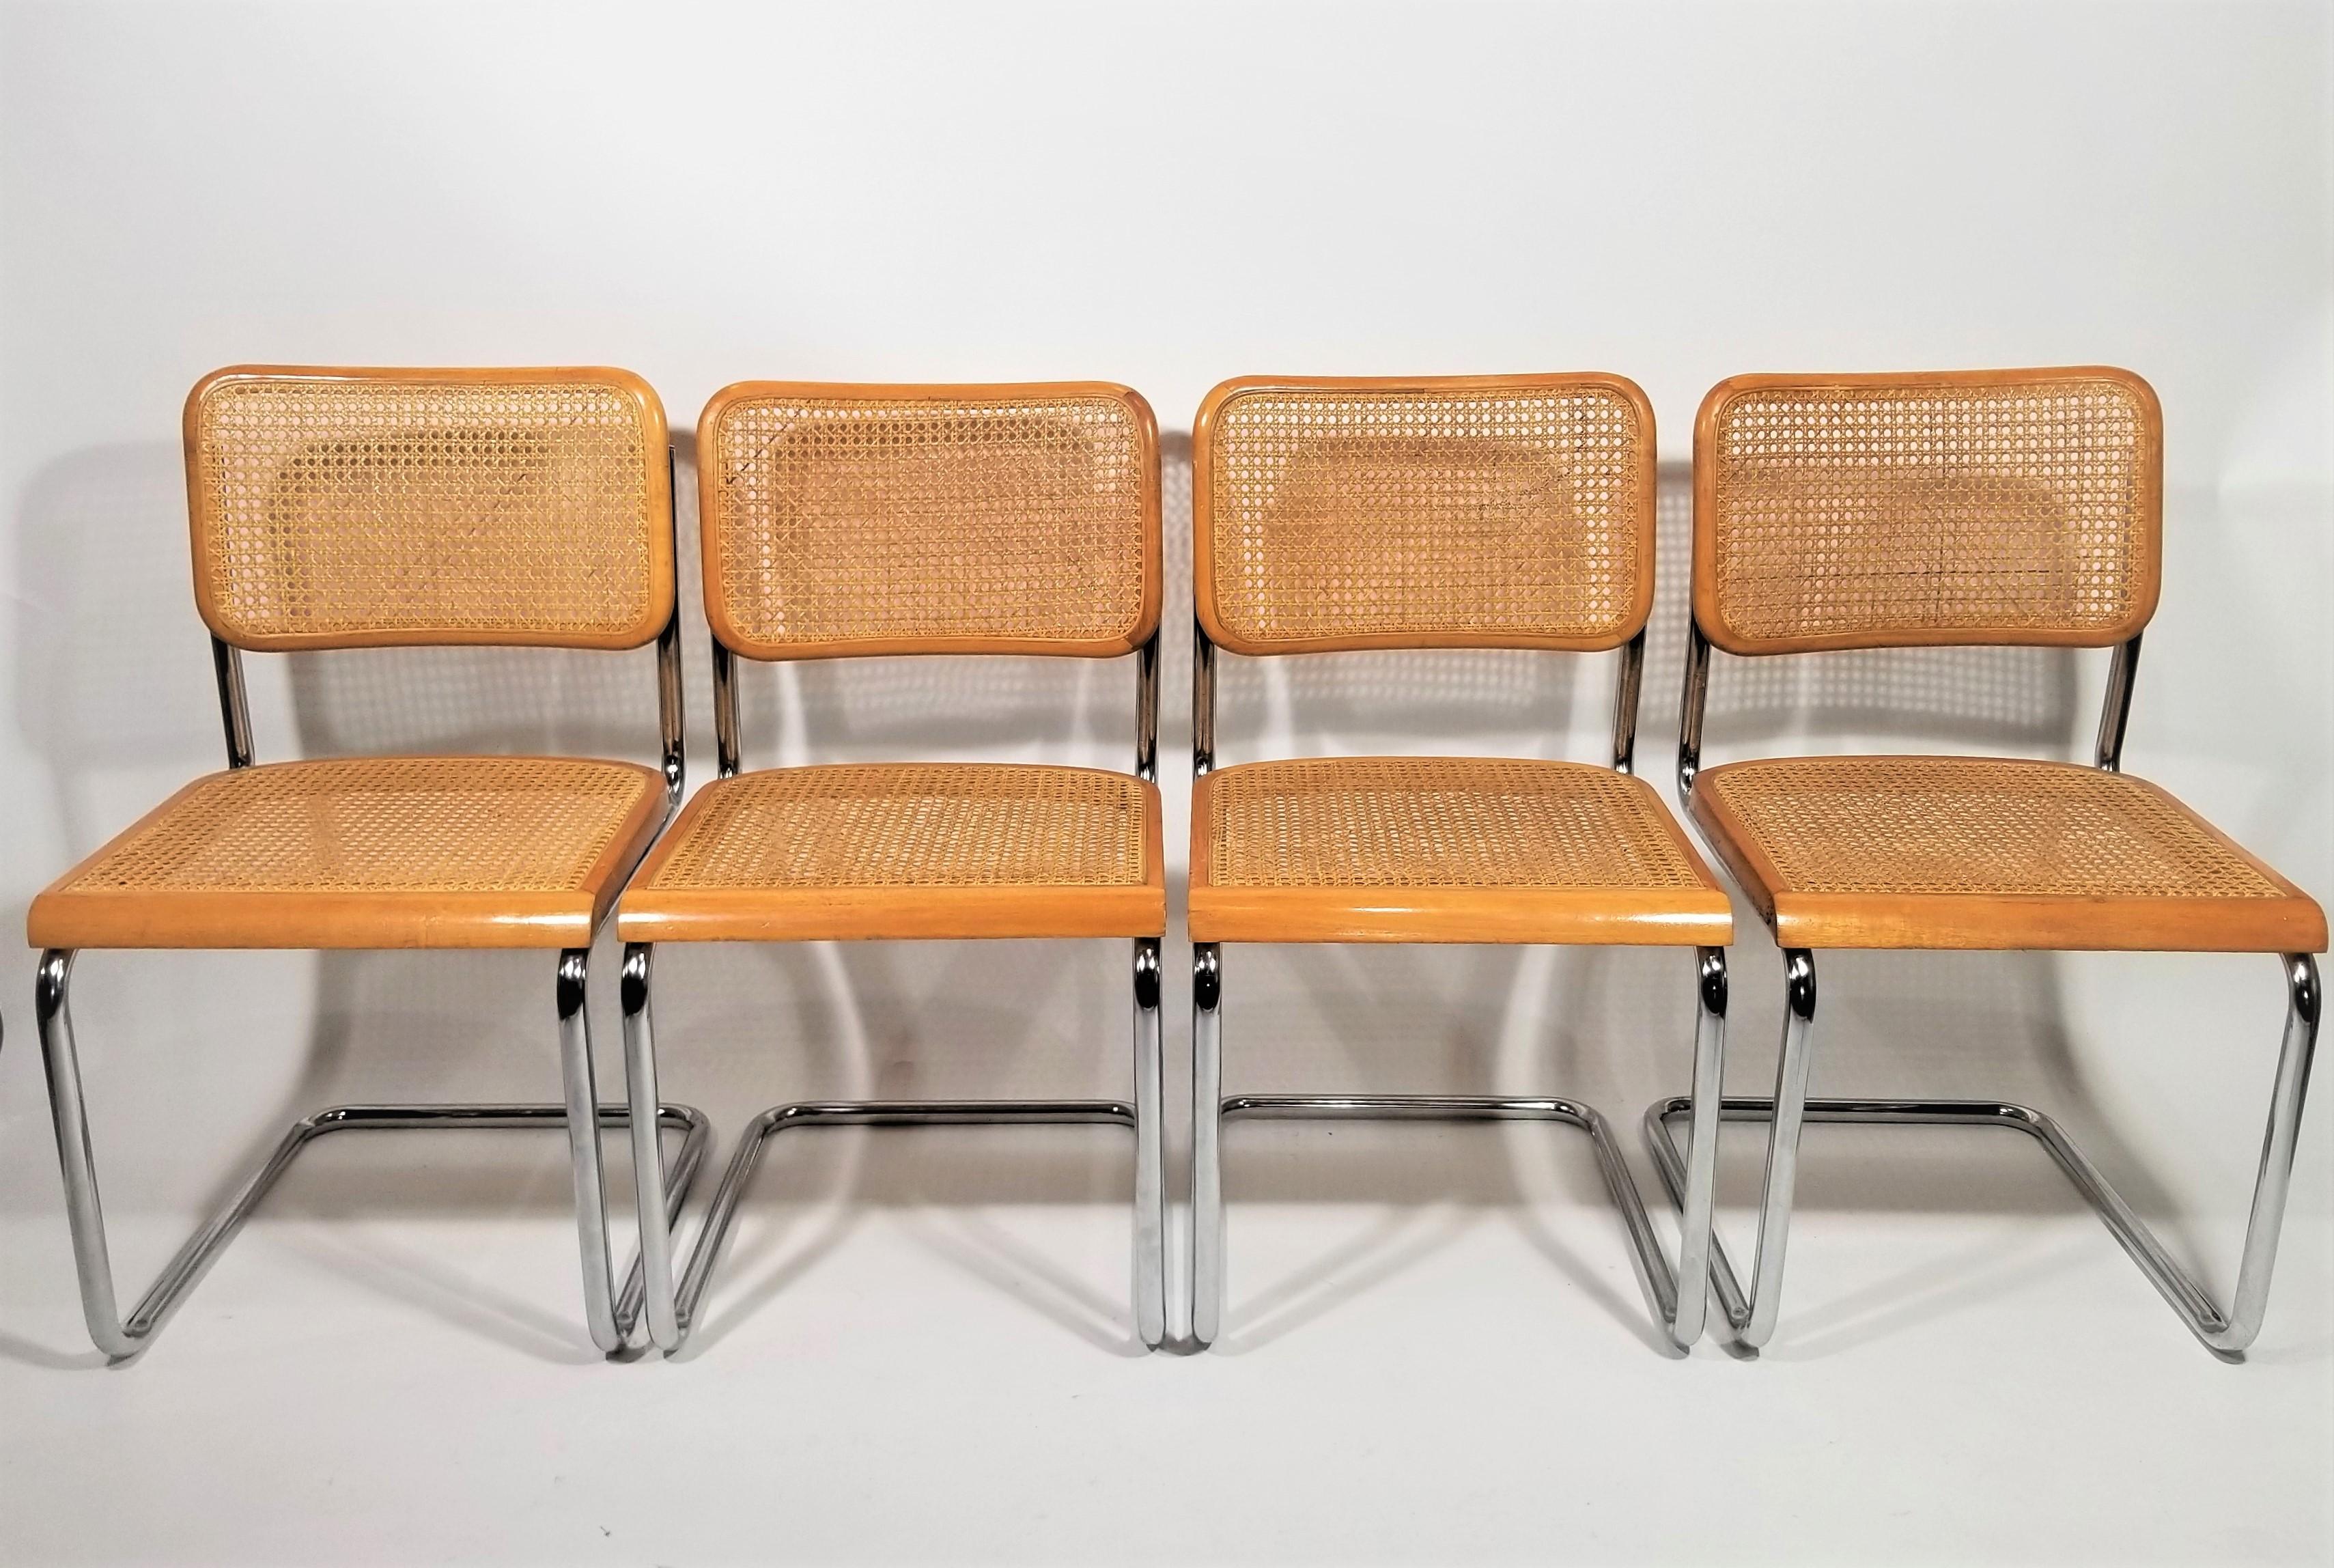 Vintage Mid Century 1970s Marcel Breuer Cesca Side Chairs oder Esszimmerstühle. Sitze und Rückenlehnen aus Rohr. Verchromte Freischwingerrahmen. Wir polieren alle Chromteile. 4er-Set

Dieser Artikel kann in NYC und Umgebung kostenlos geliefert